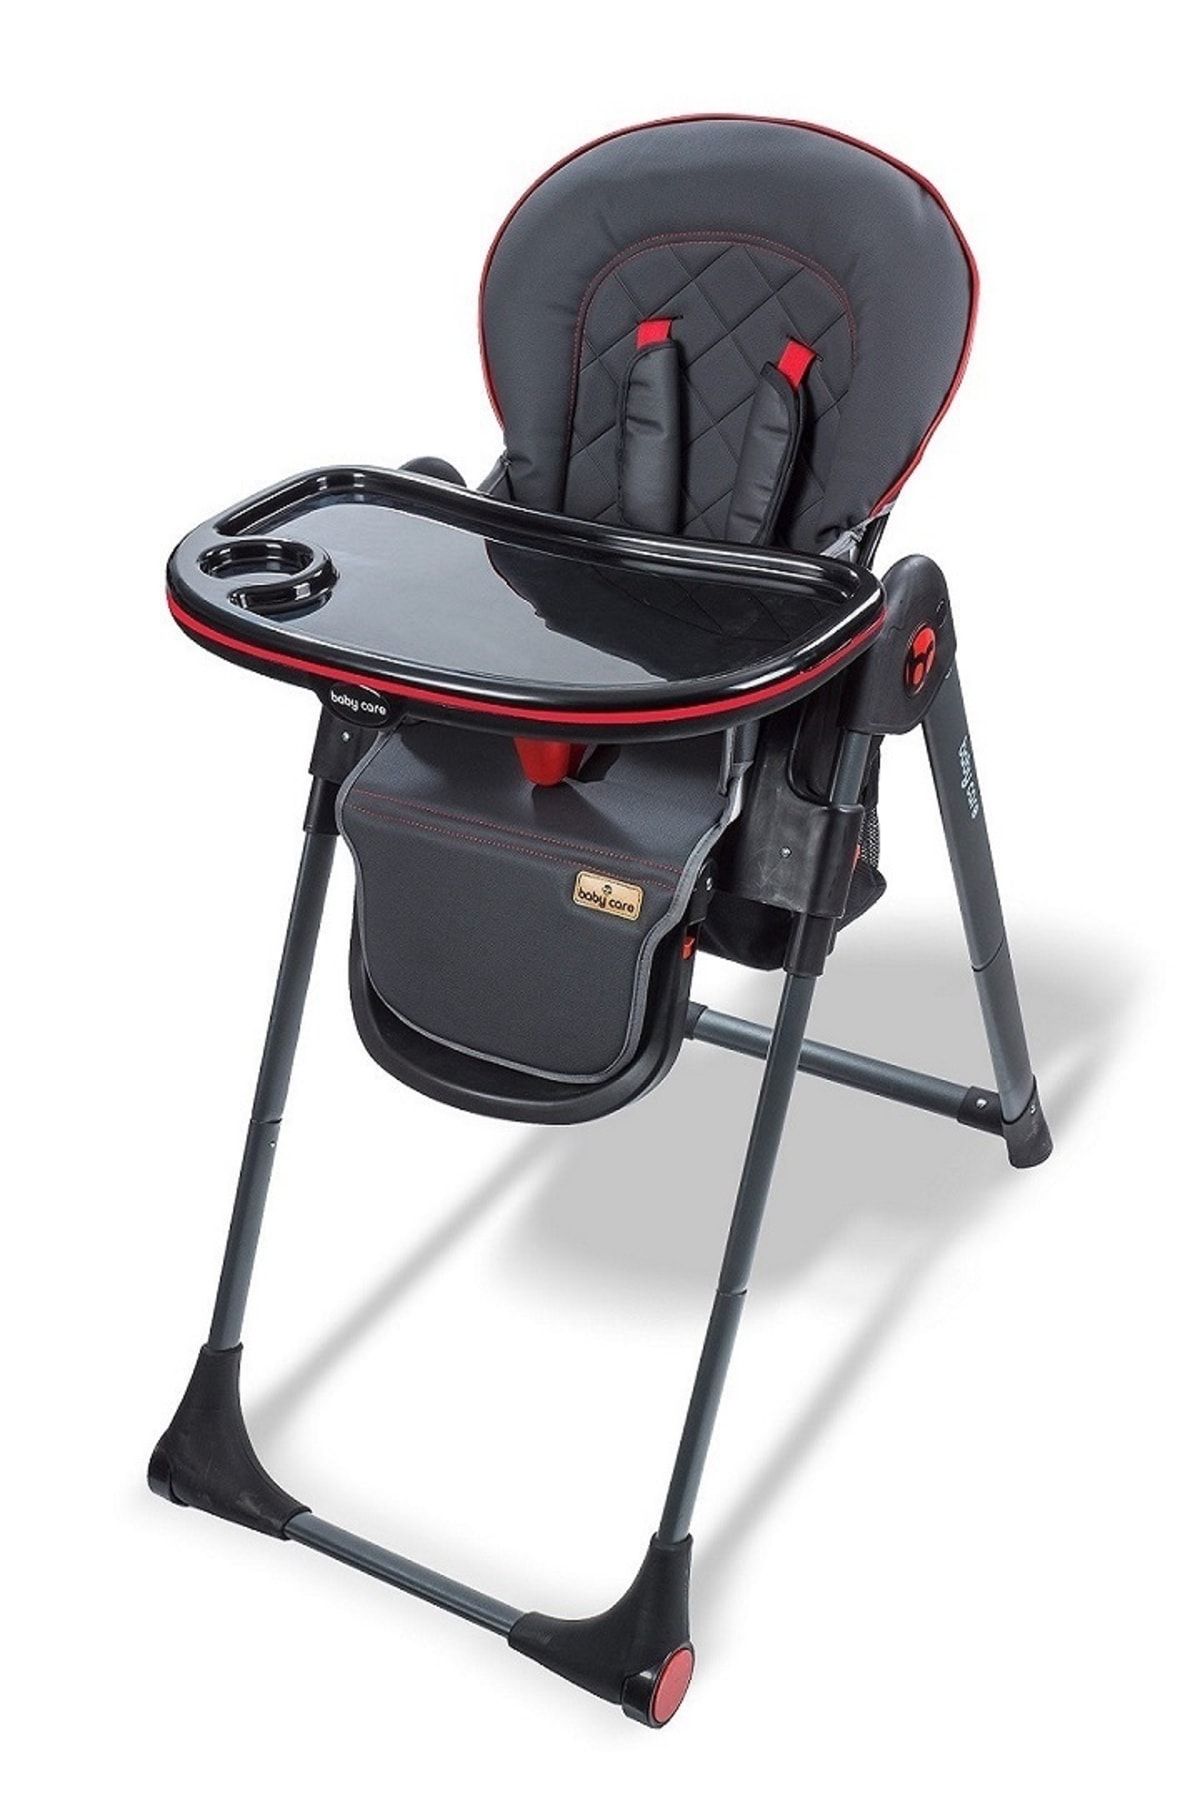 Mama Sandalyesi - Bc 515 Multiflex Katlanır Mama Sandalyesi - Siyah_0